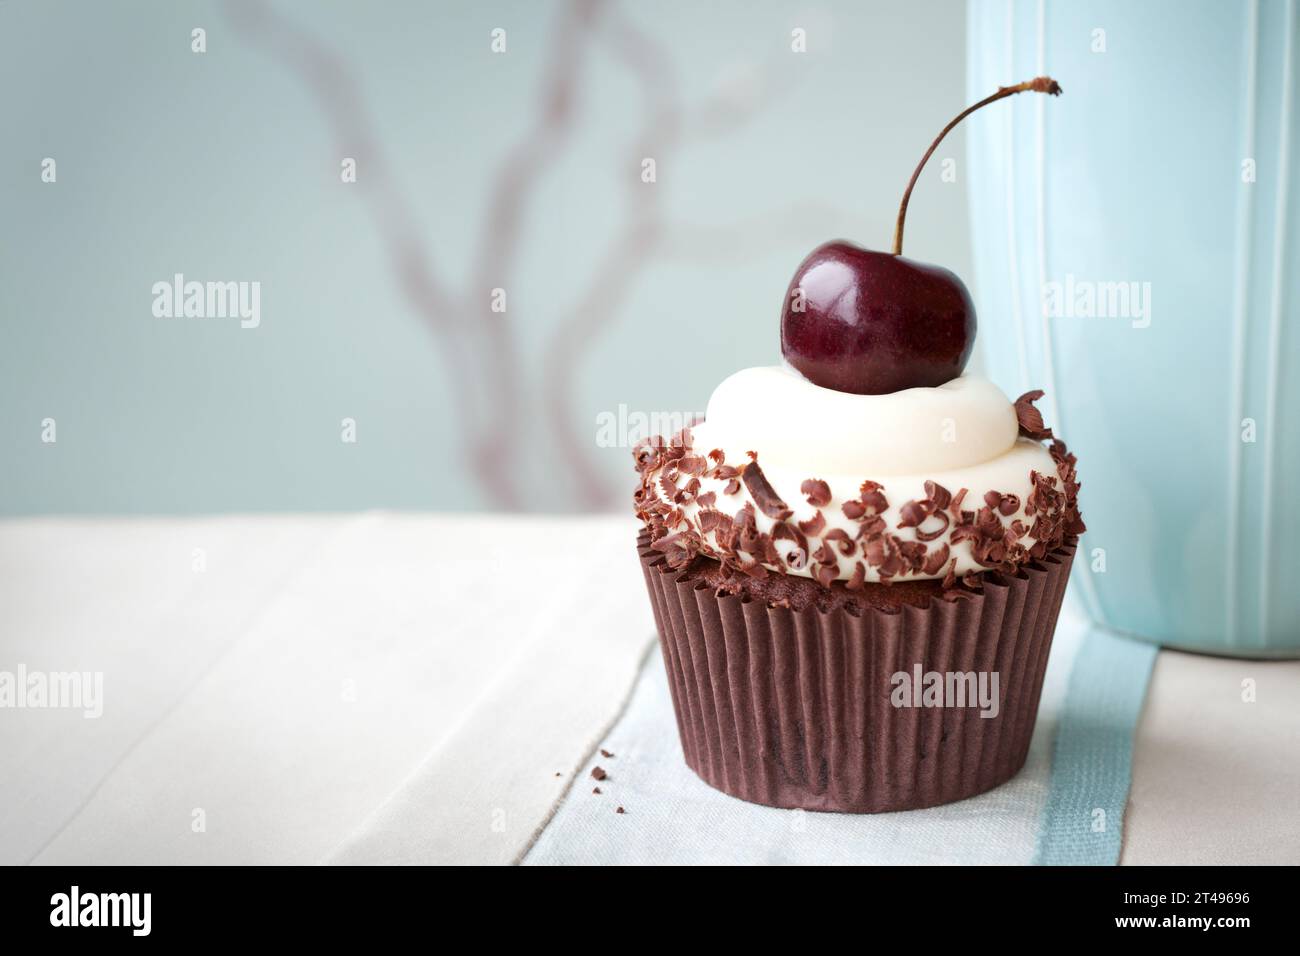 Cupcake forêt noire décoré de copeaux de chocolat et d'une seule cerise noire Banque D'Images